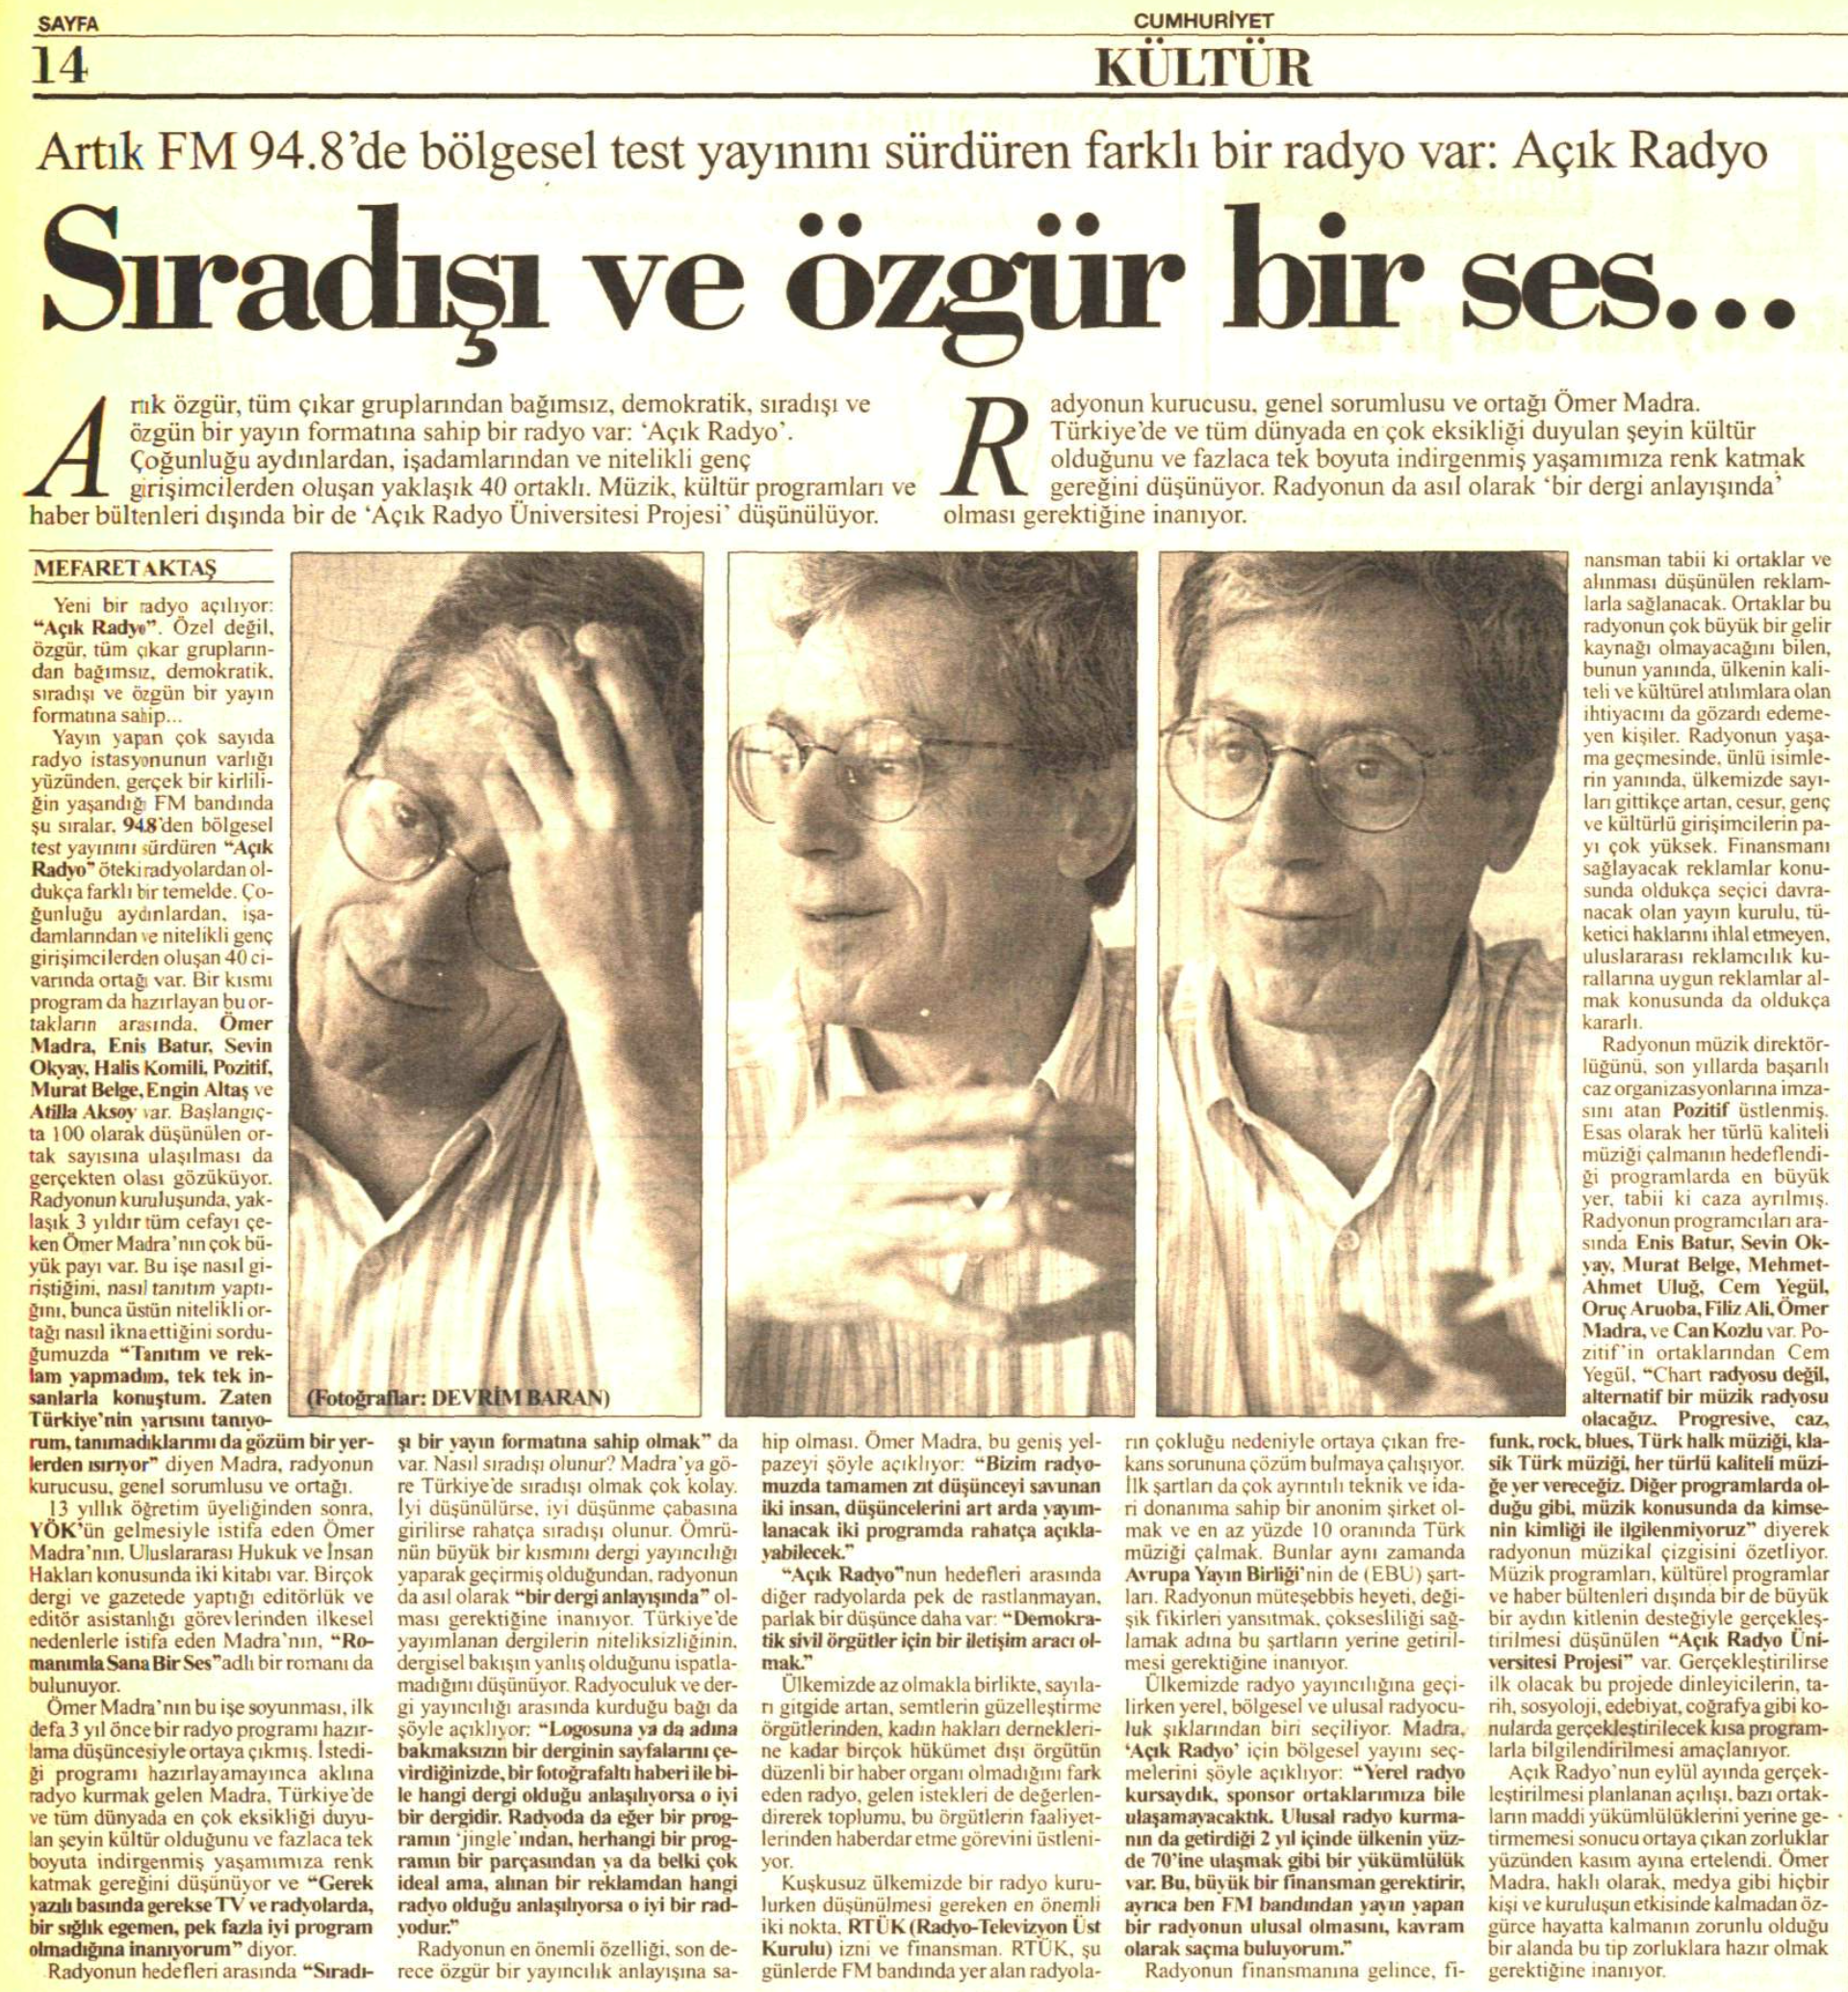 24 Eylül 1995 tarihli Cumhuriyet gazetesi röportajın yer aldığı kupür